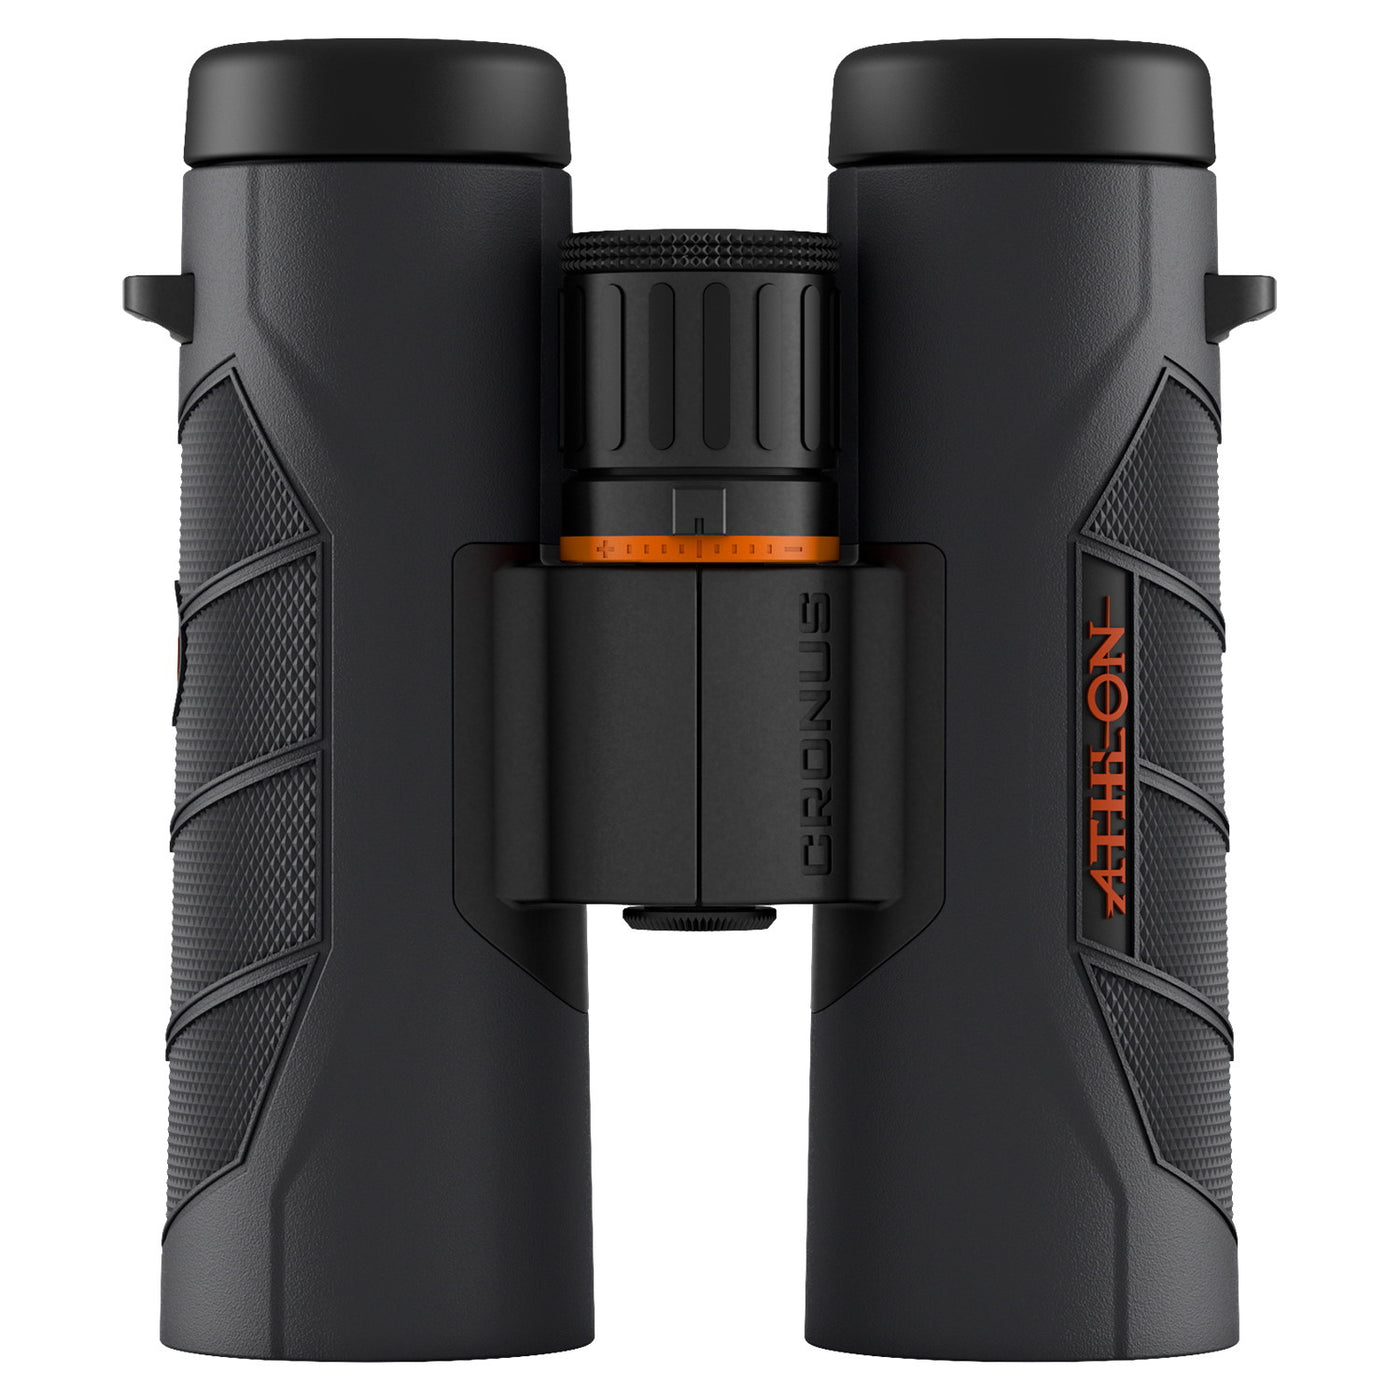 Athlon Cronus UHD G2 10x42mm Binoculars